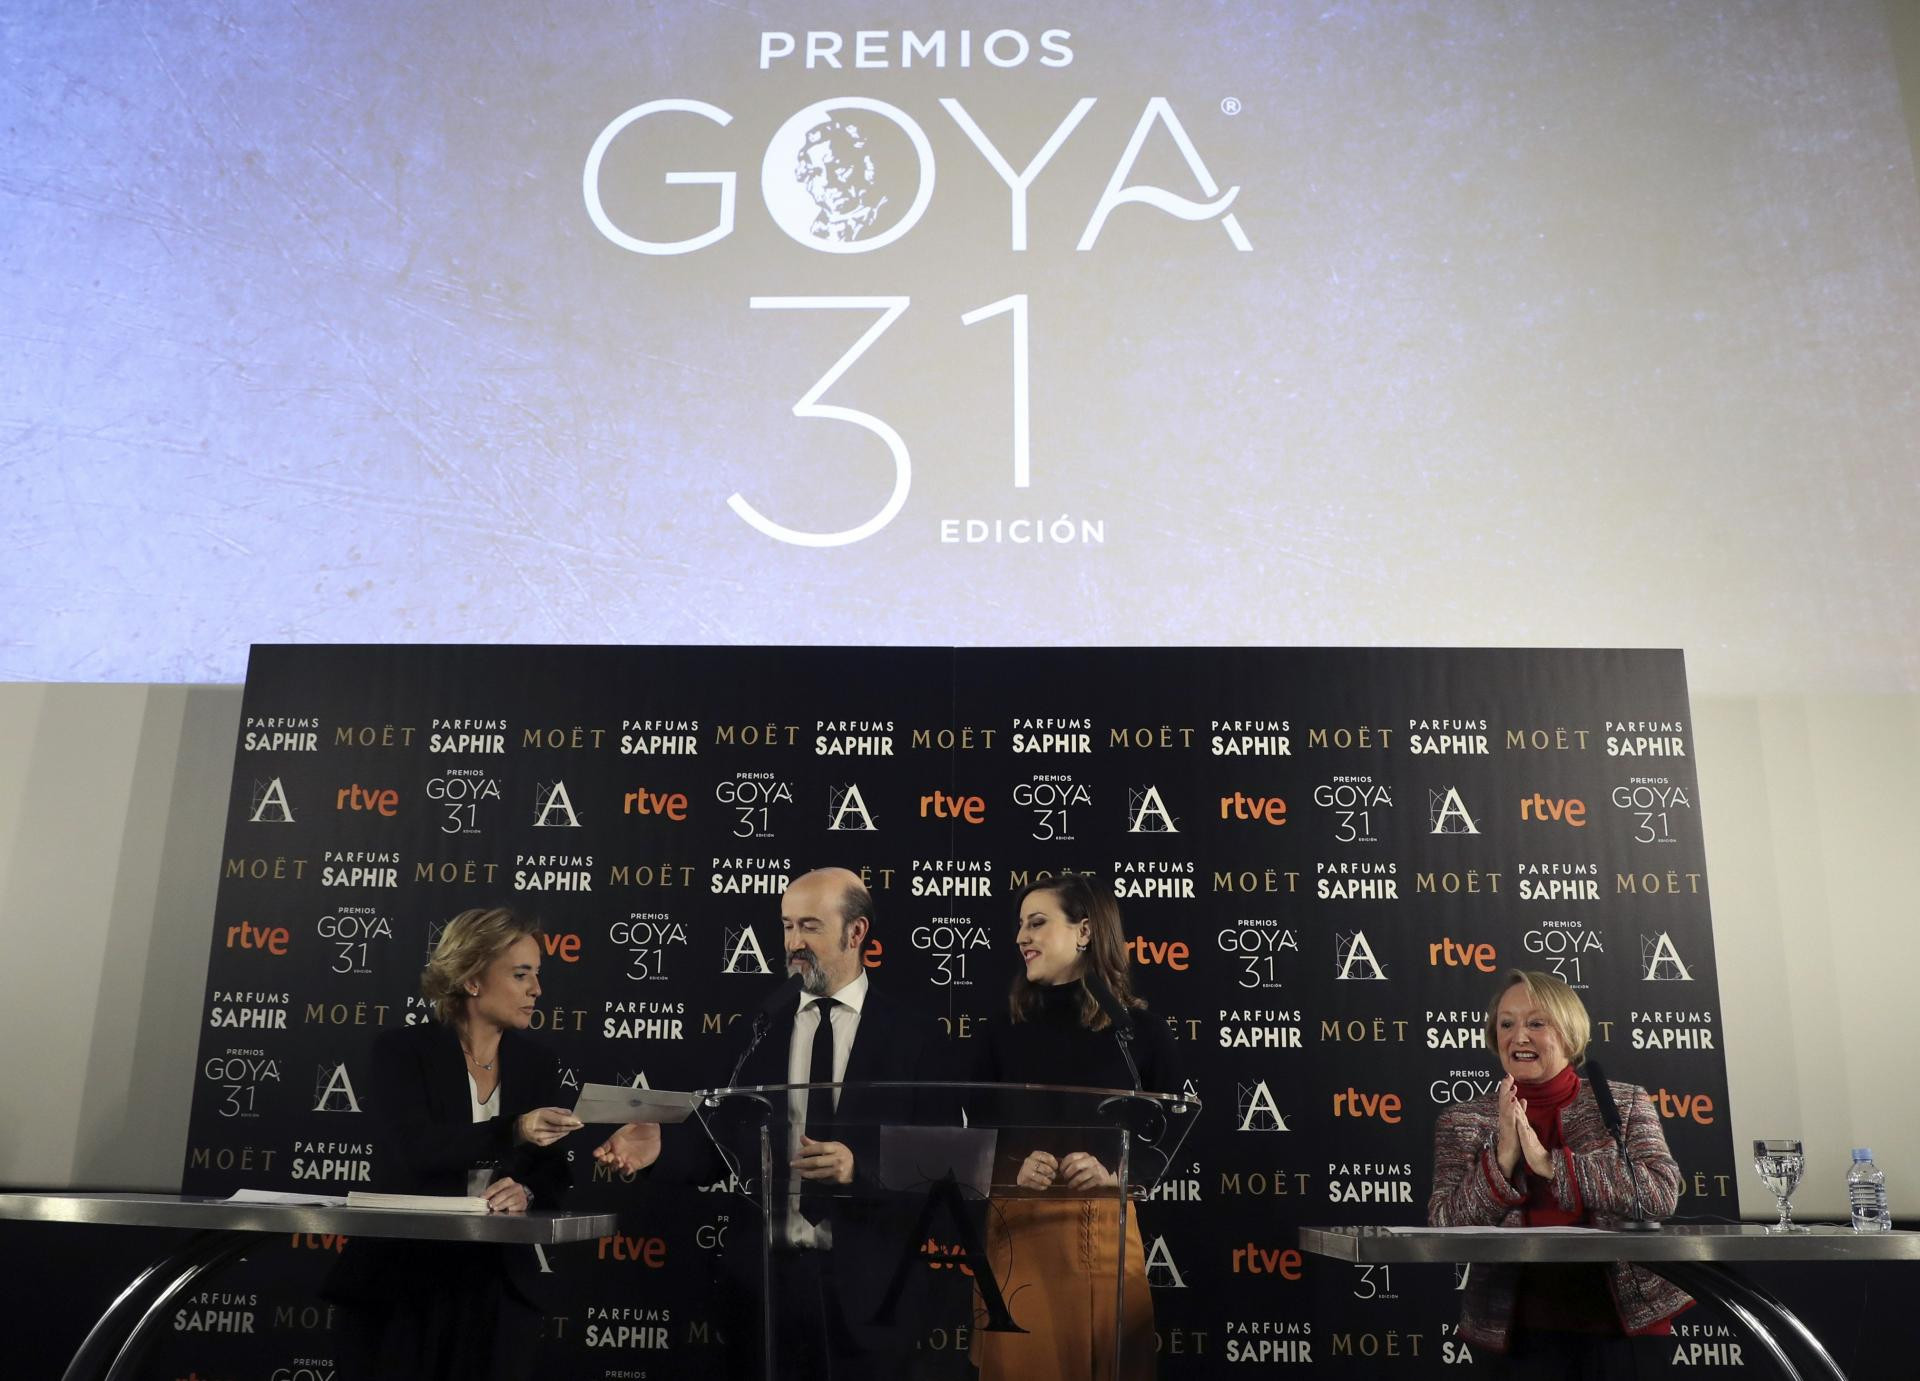 PremiosGoya 2